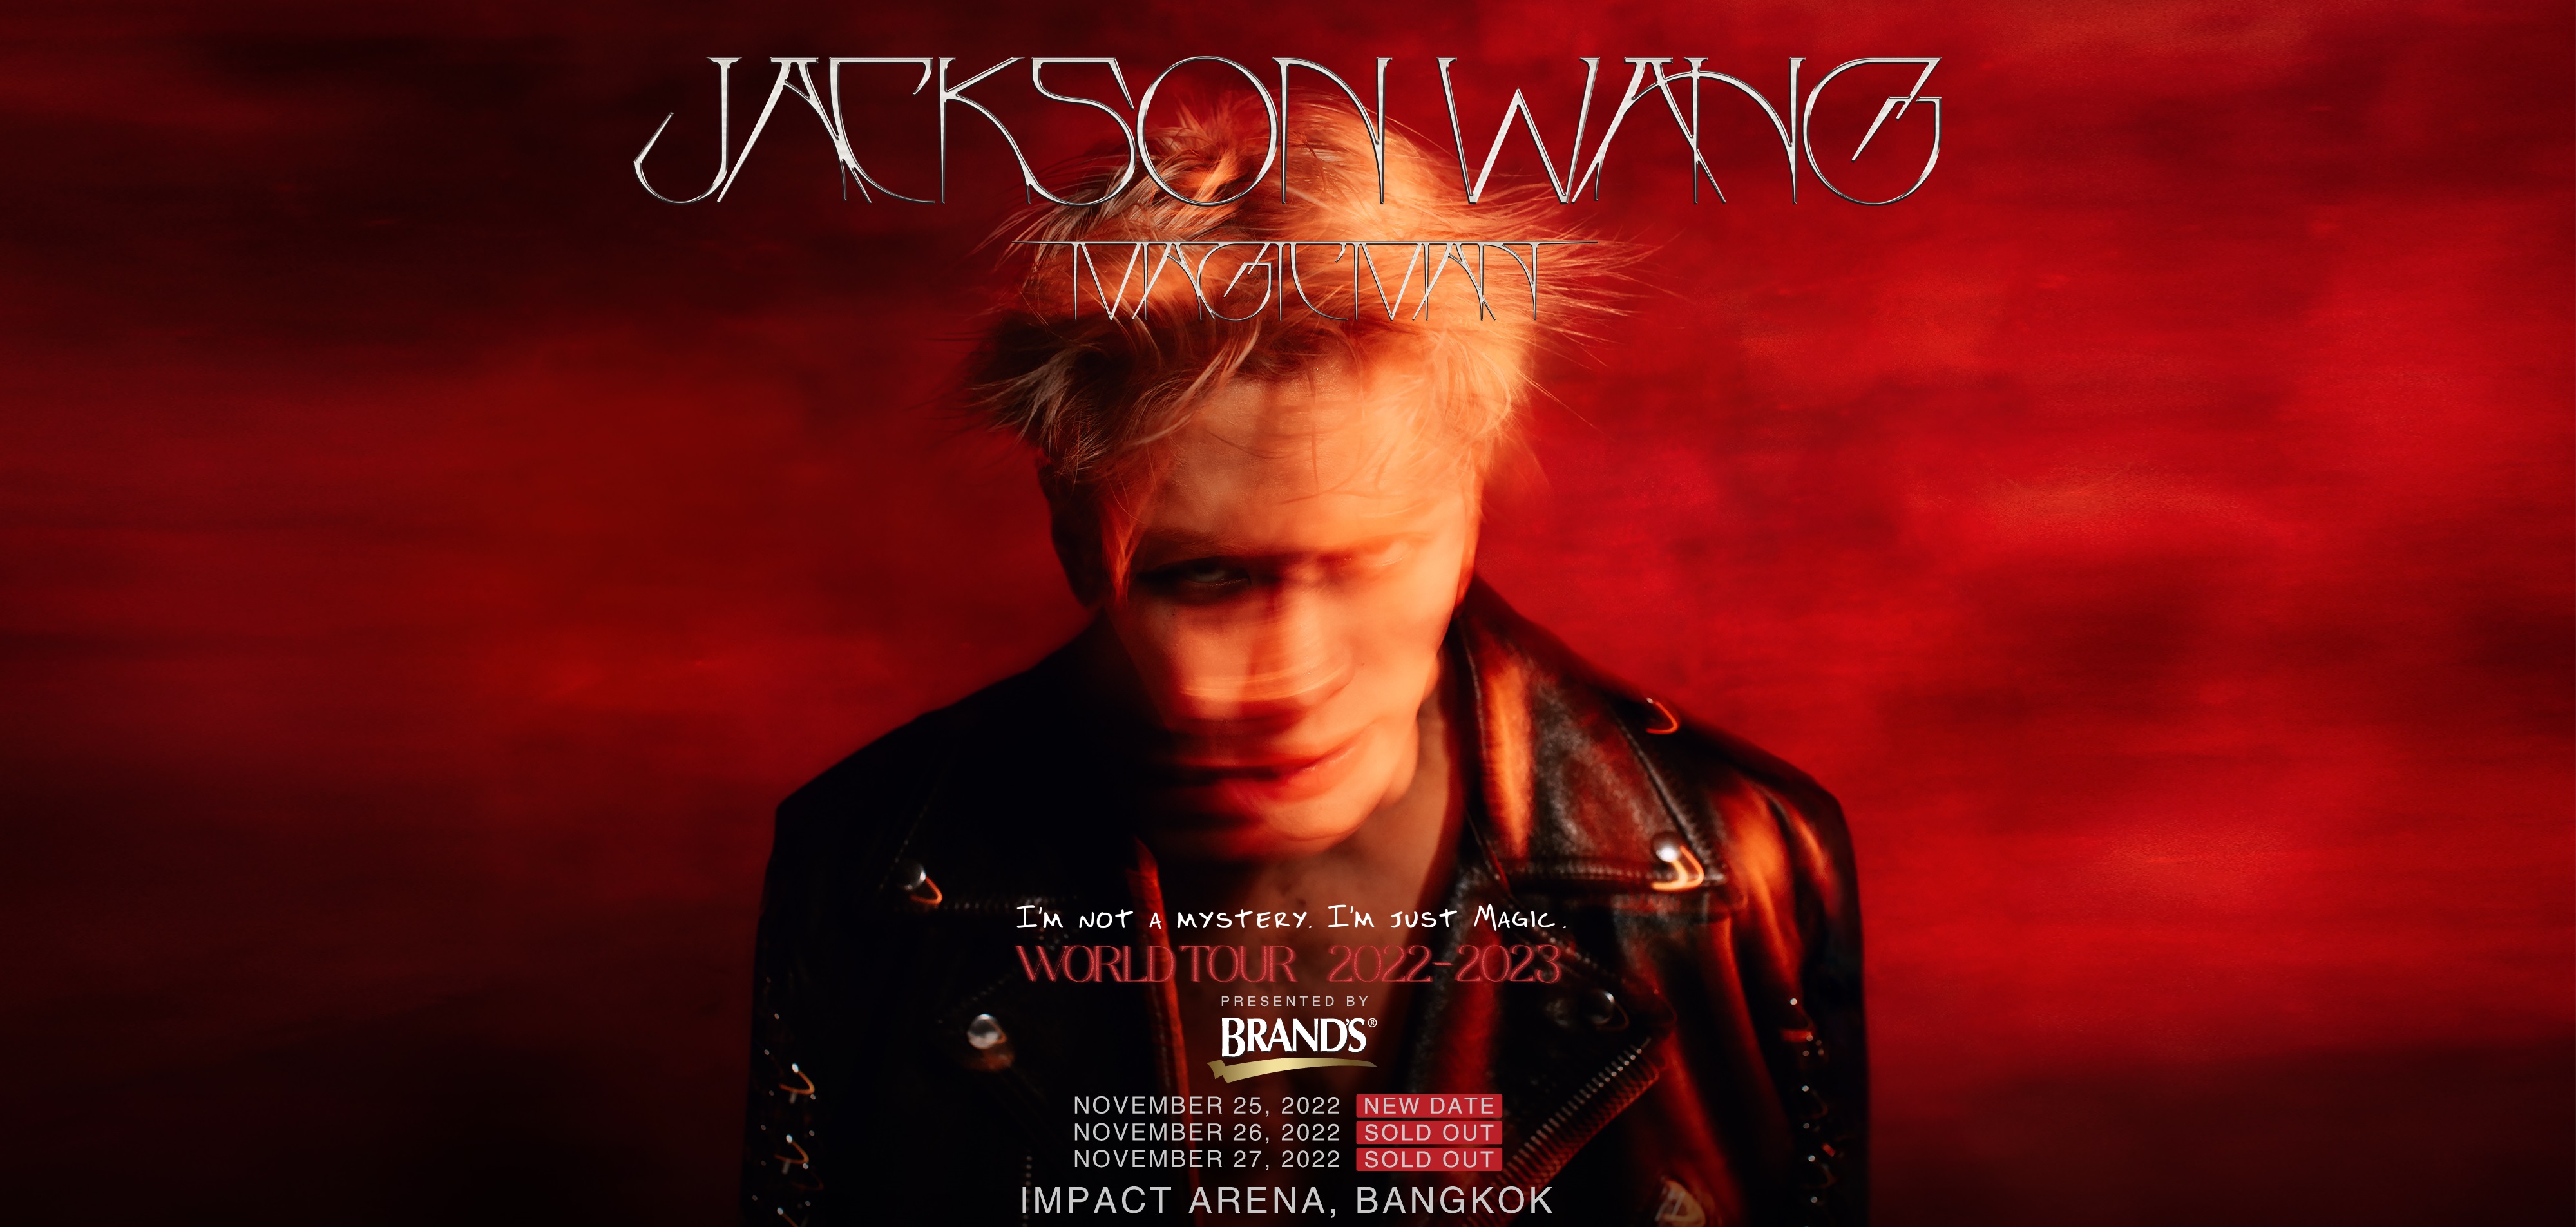 “แบรนด์” เป็นผู้สนับสนุนหลัก “JACKSON WANG MAGIC MAN WORLD TOUR 2022 BANGKOK PRESENTED BY BRAND’S” ชวนเหล่าแฟนคลับ ร่วมลุ้นไปสนุกกับคอนเสิร์ต “แจ็คสัน หวัง” ซุปตาร์ระดับโลก